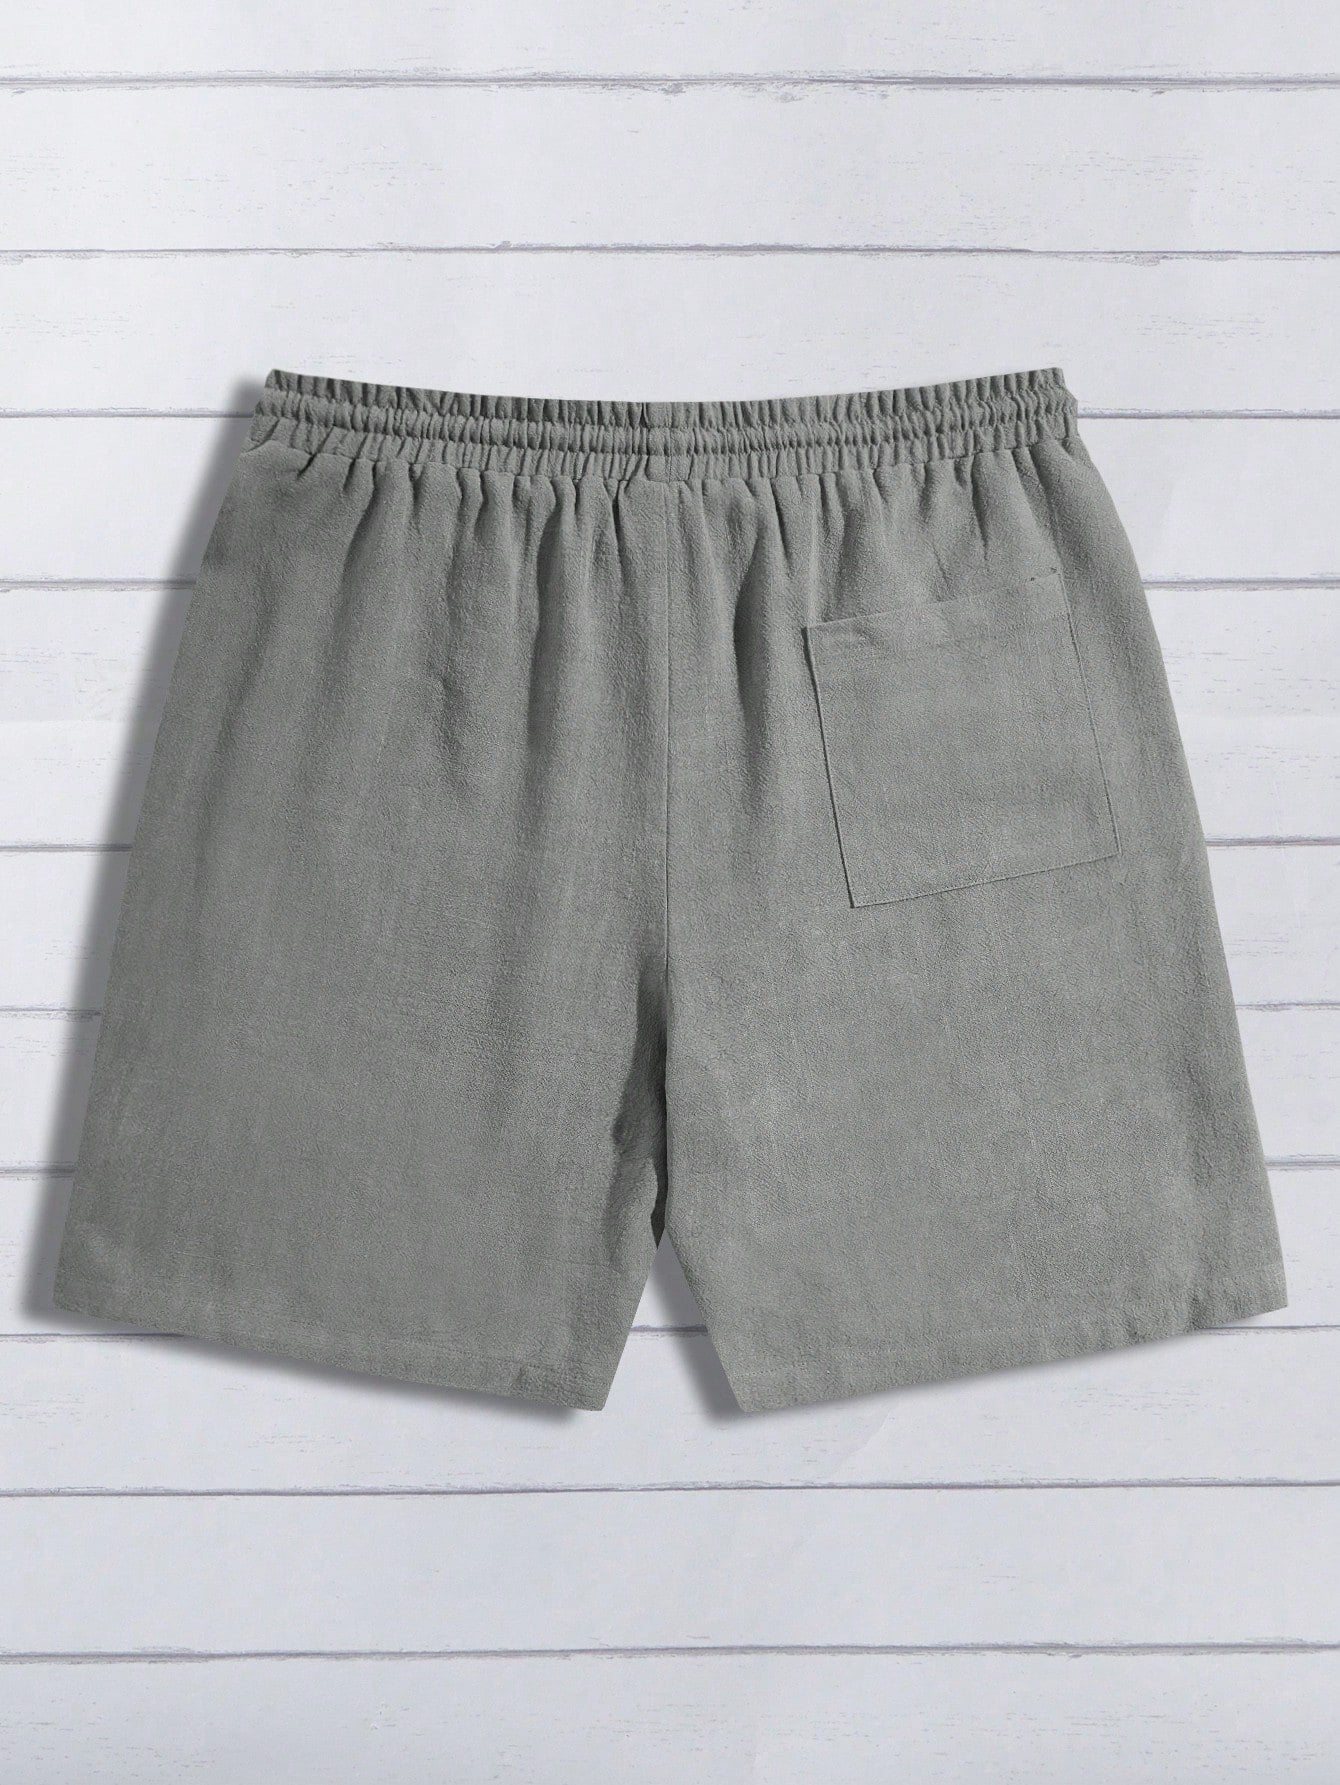 Men's Stylish Drawstring Woven Shorts